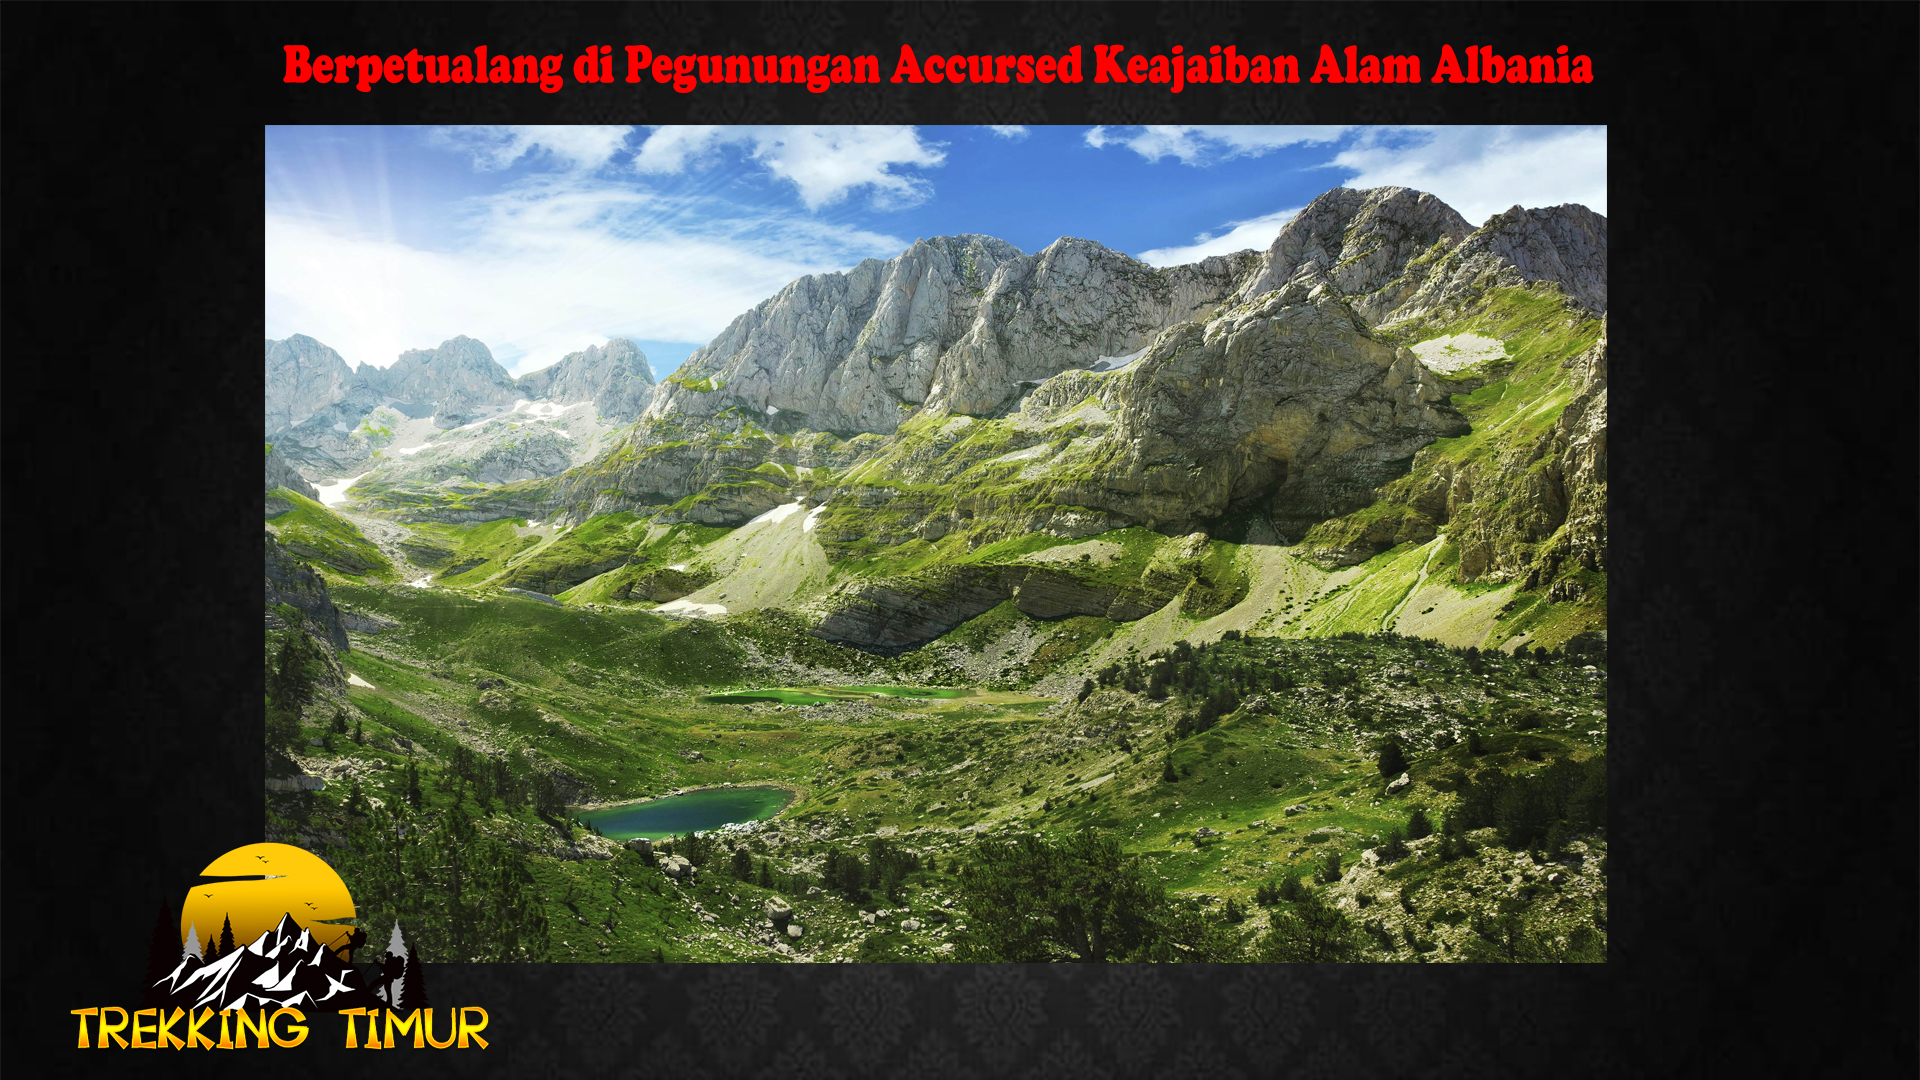 Berpetualang di Pegunungan Accursed Keajaiban Alam Albania